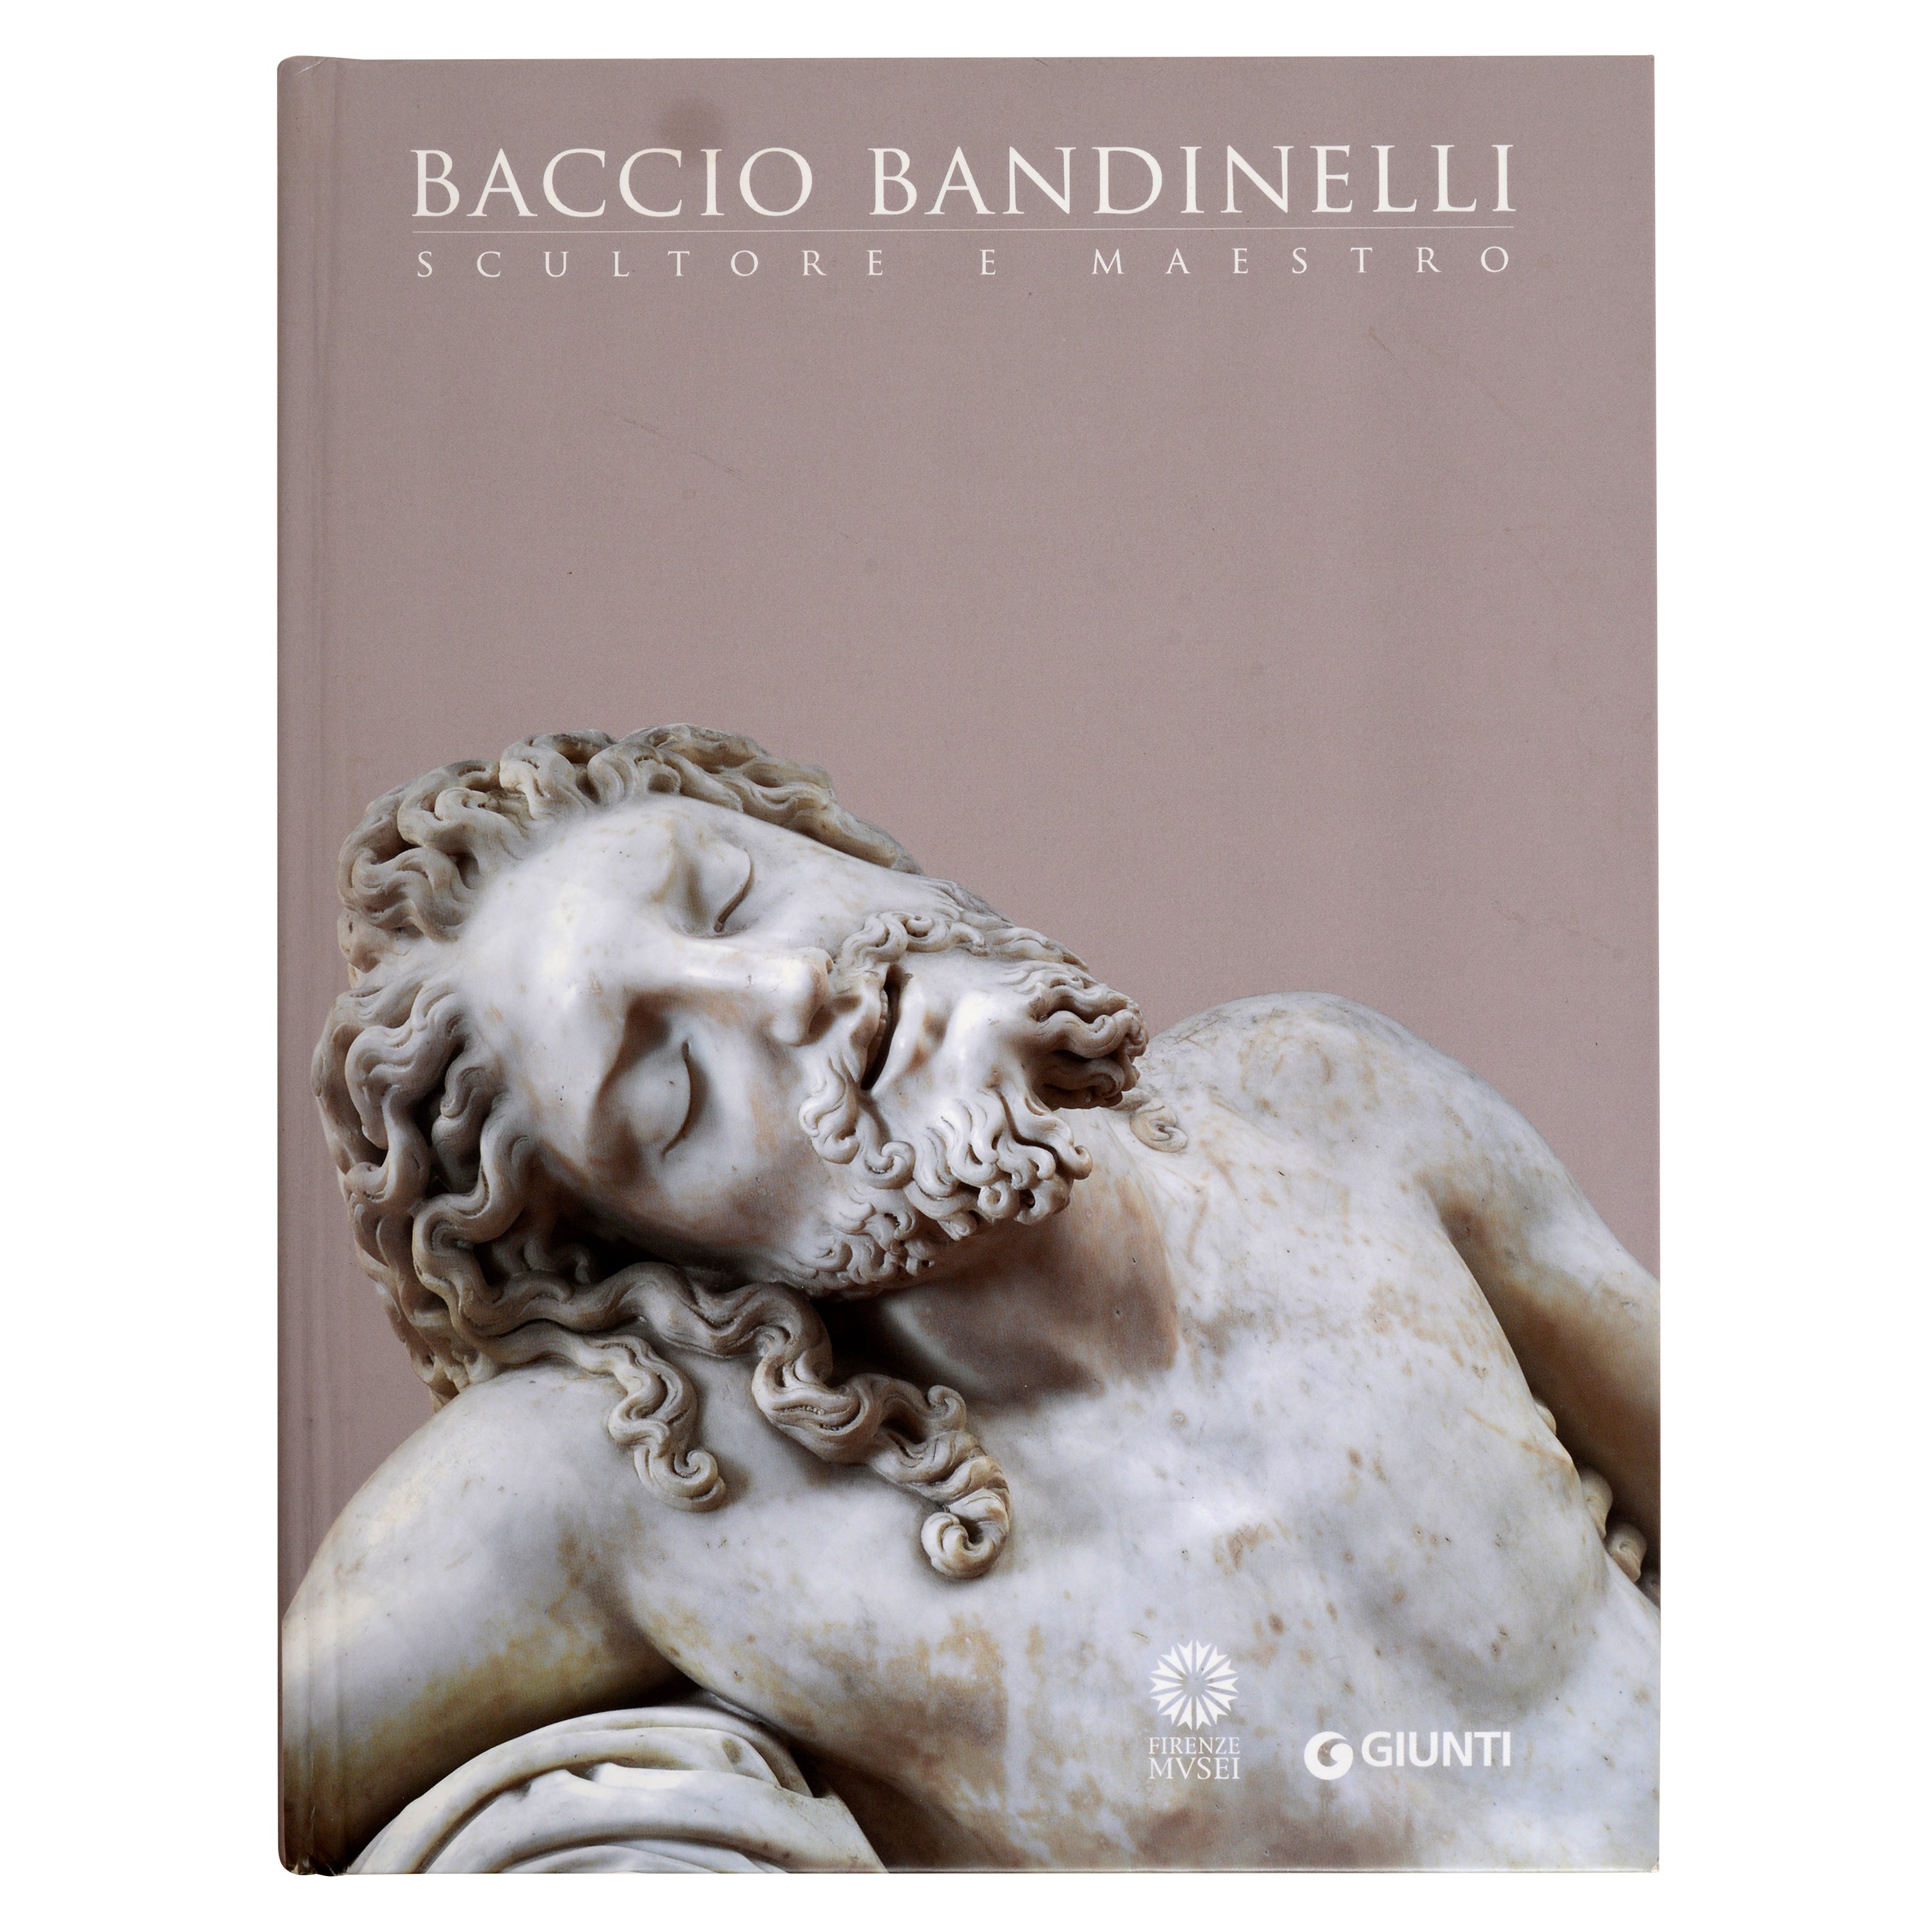 Baccio Bandinelli Scultore e Maestro For Sale